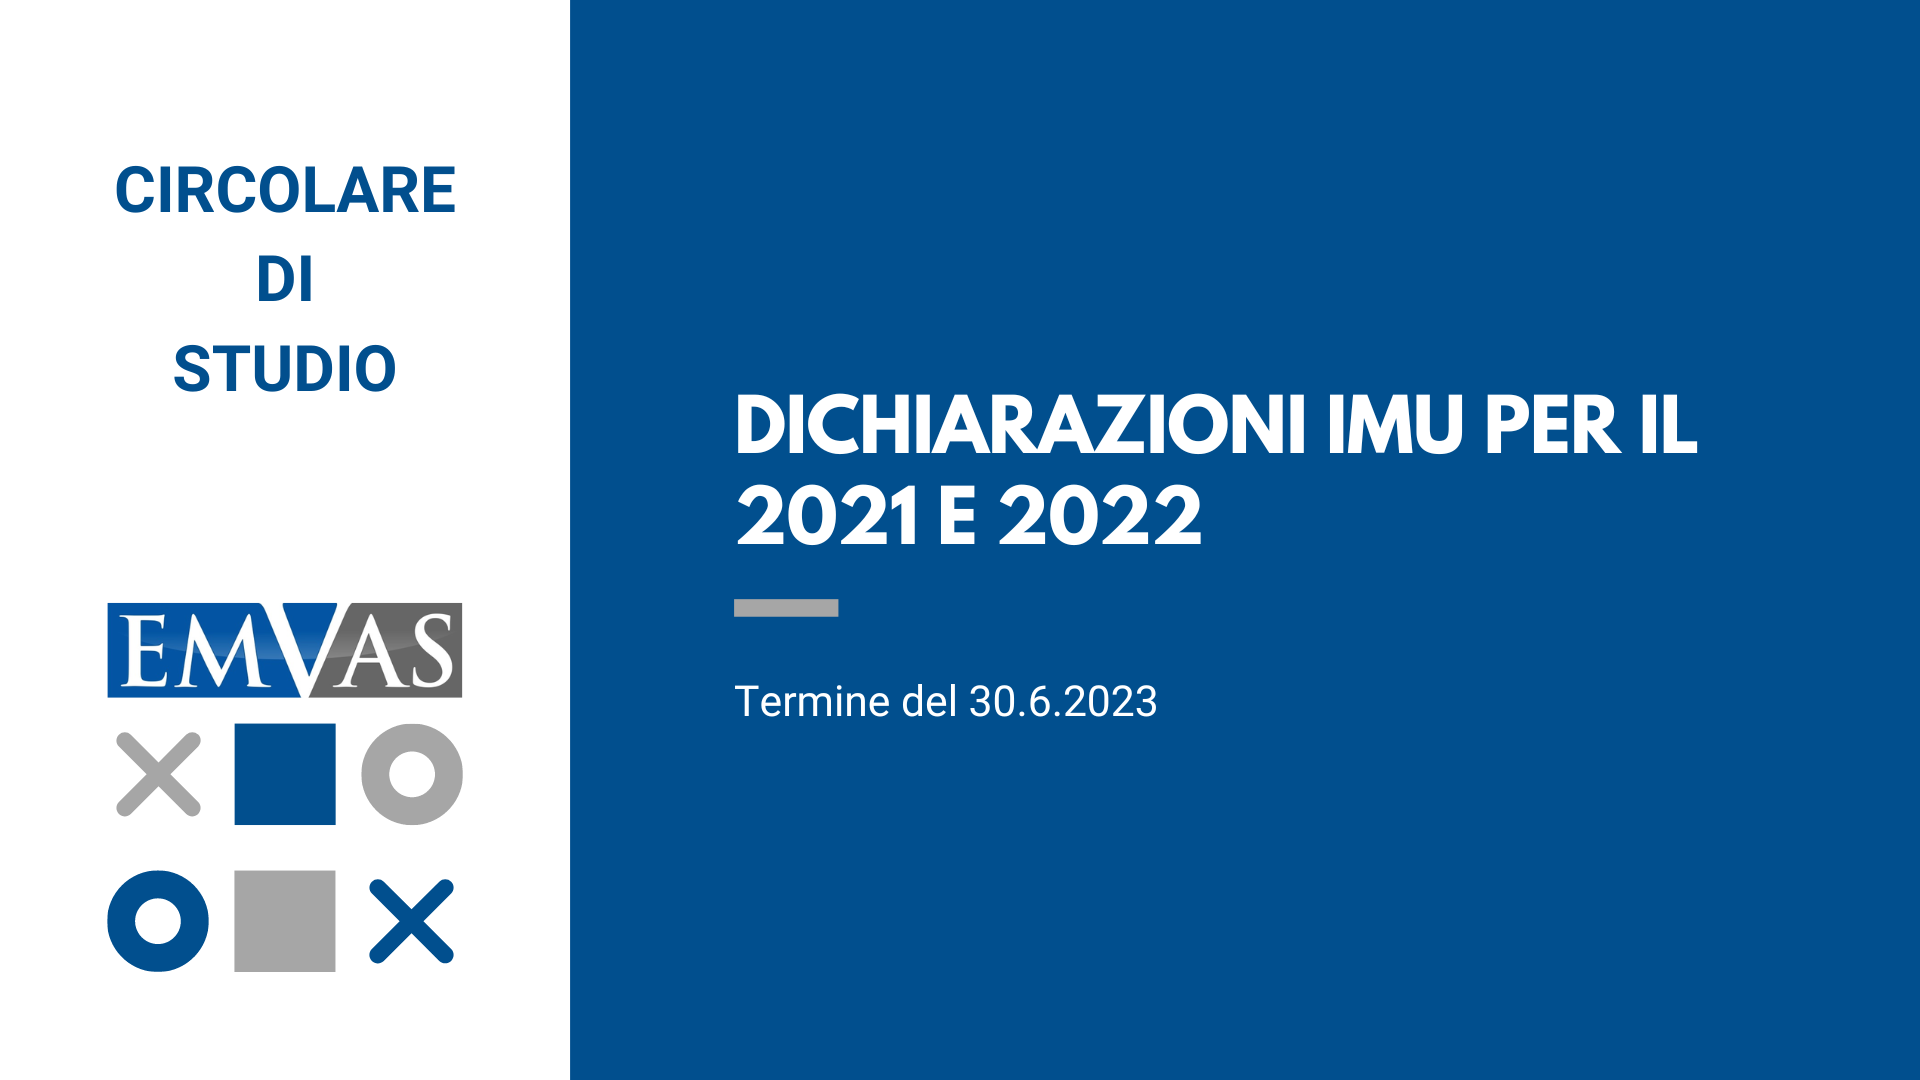 DICHIARAZIONE IMU 2021 e 2022